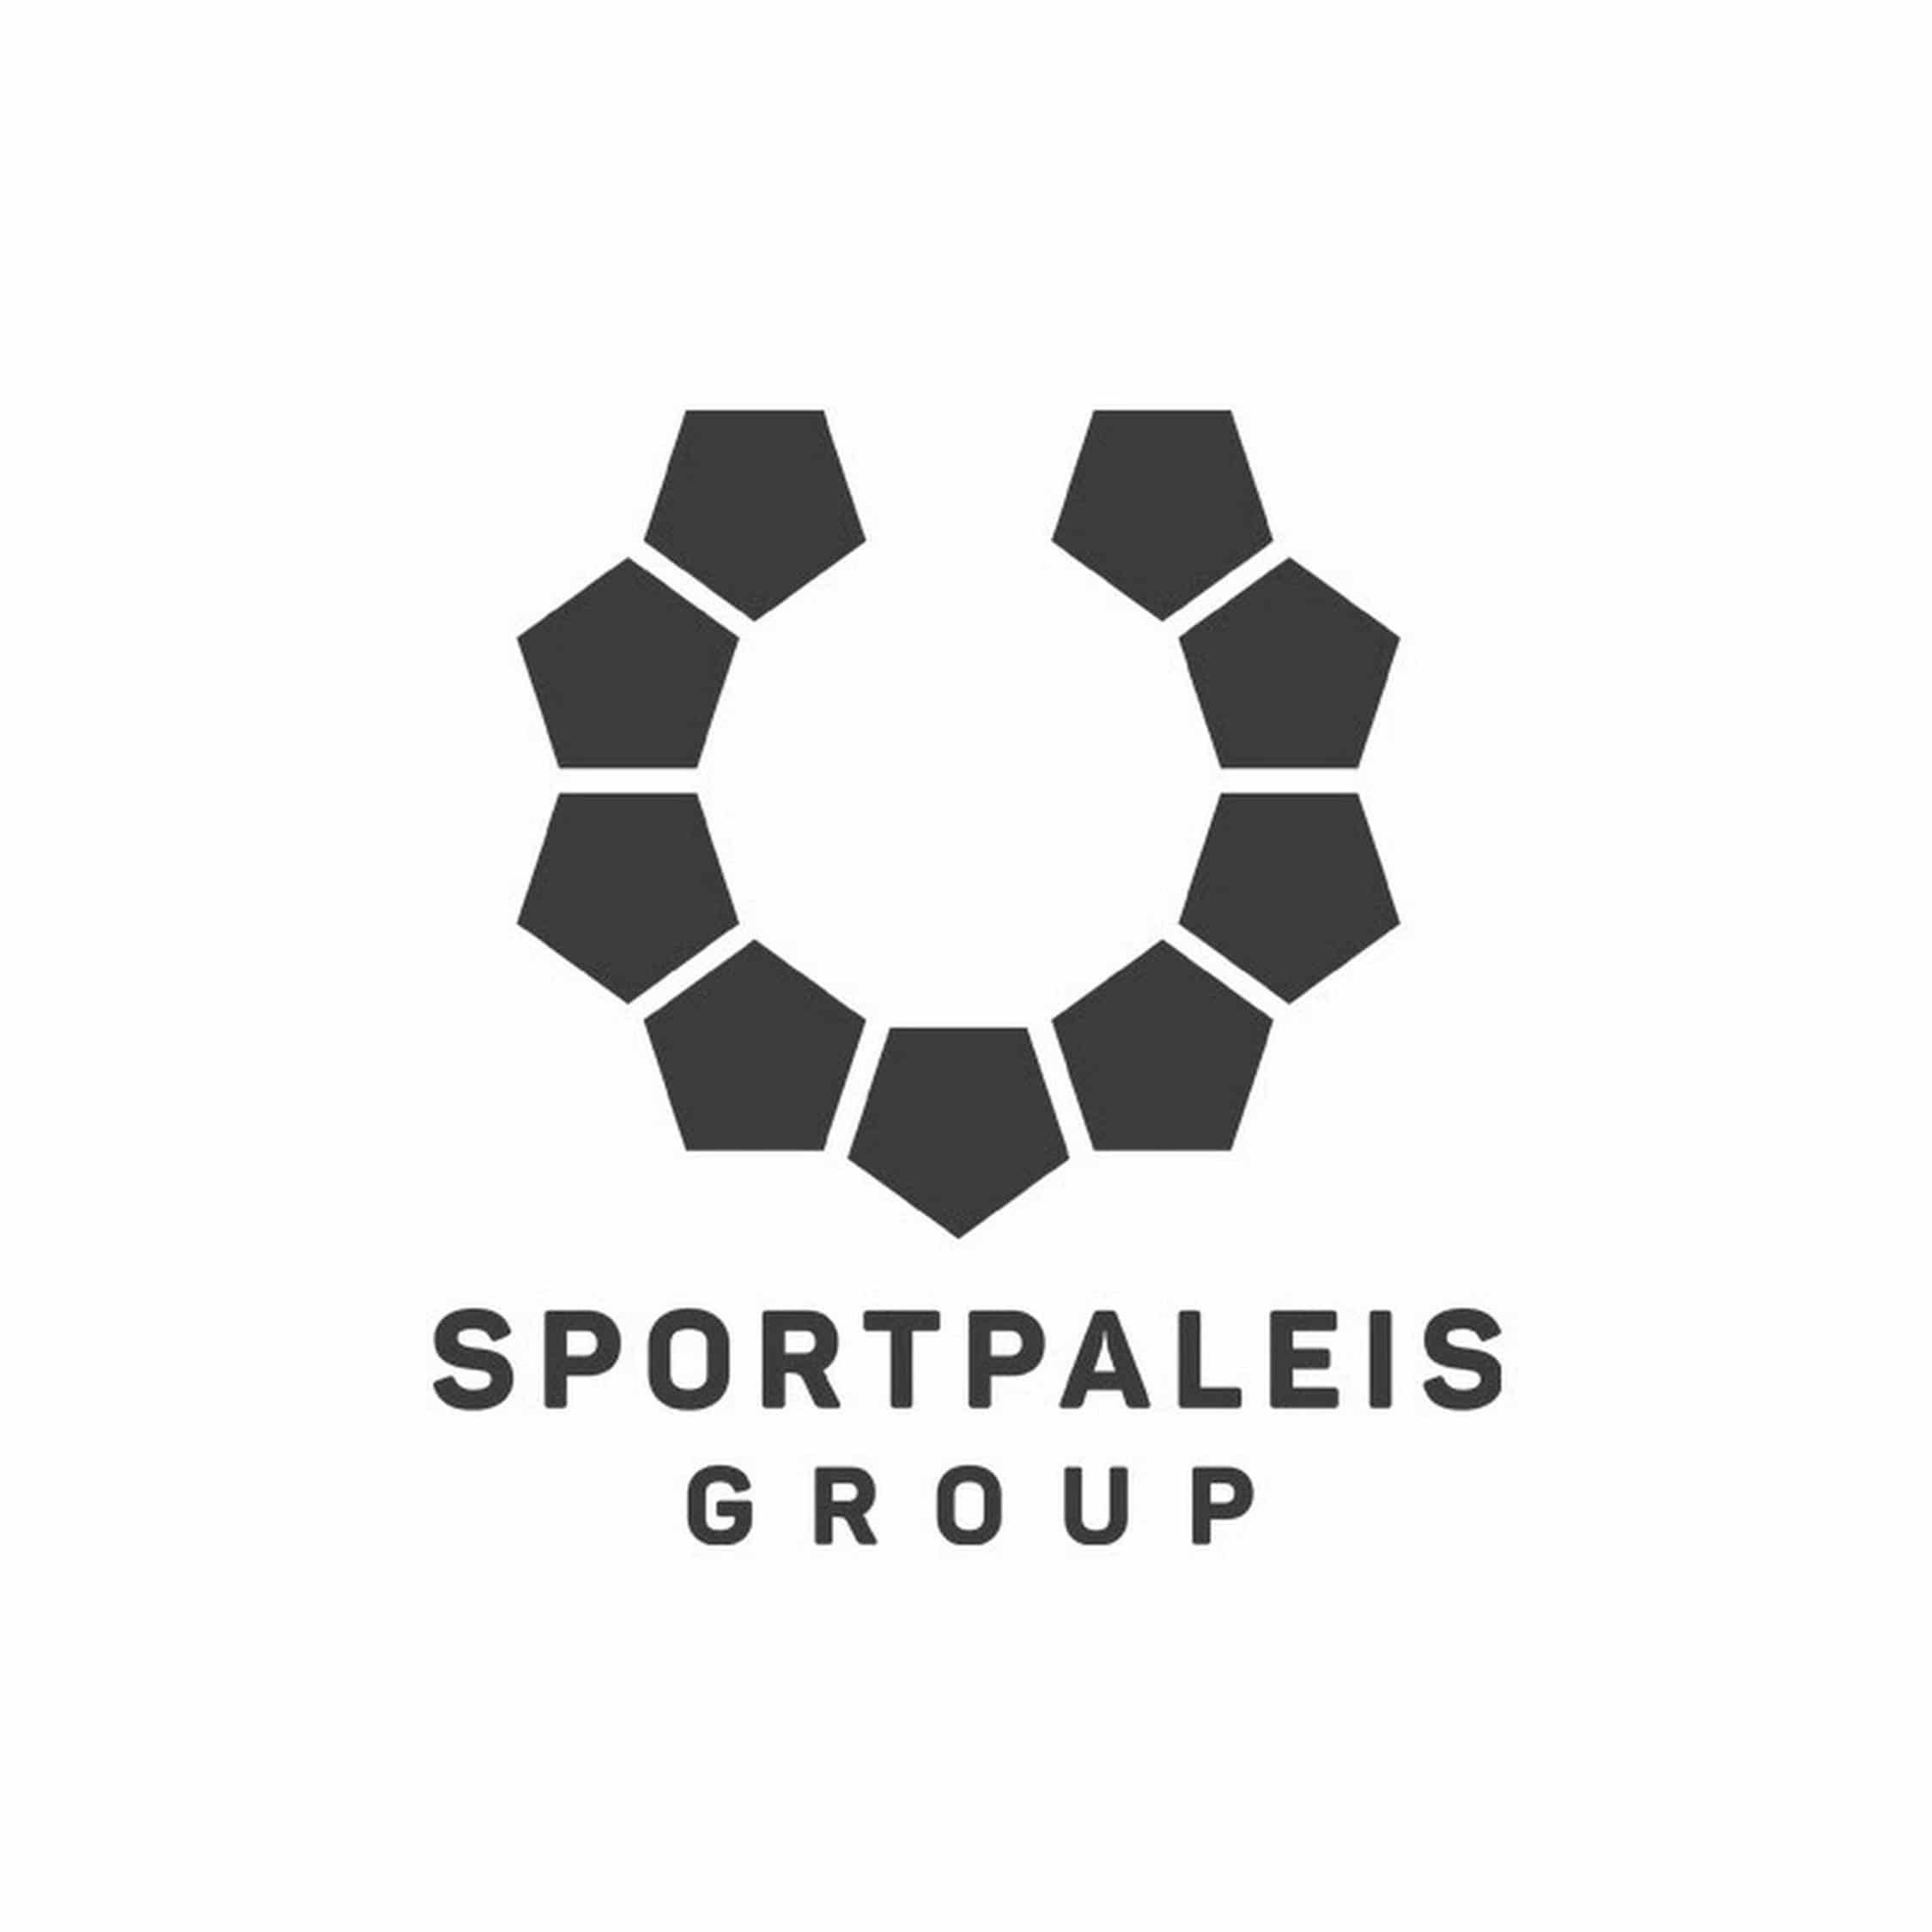 Sportpaleis Group Koen Belien - Over Koen Beliën